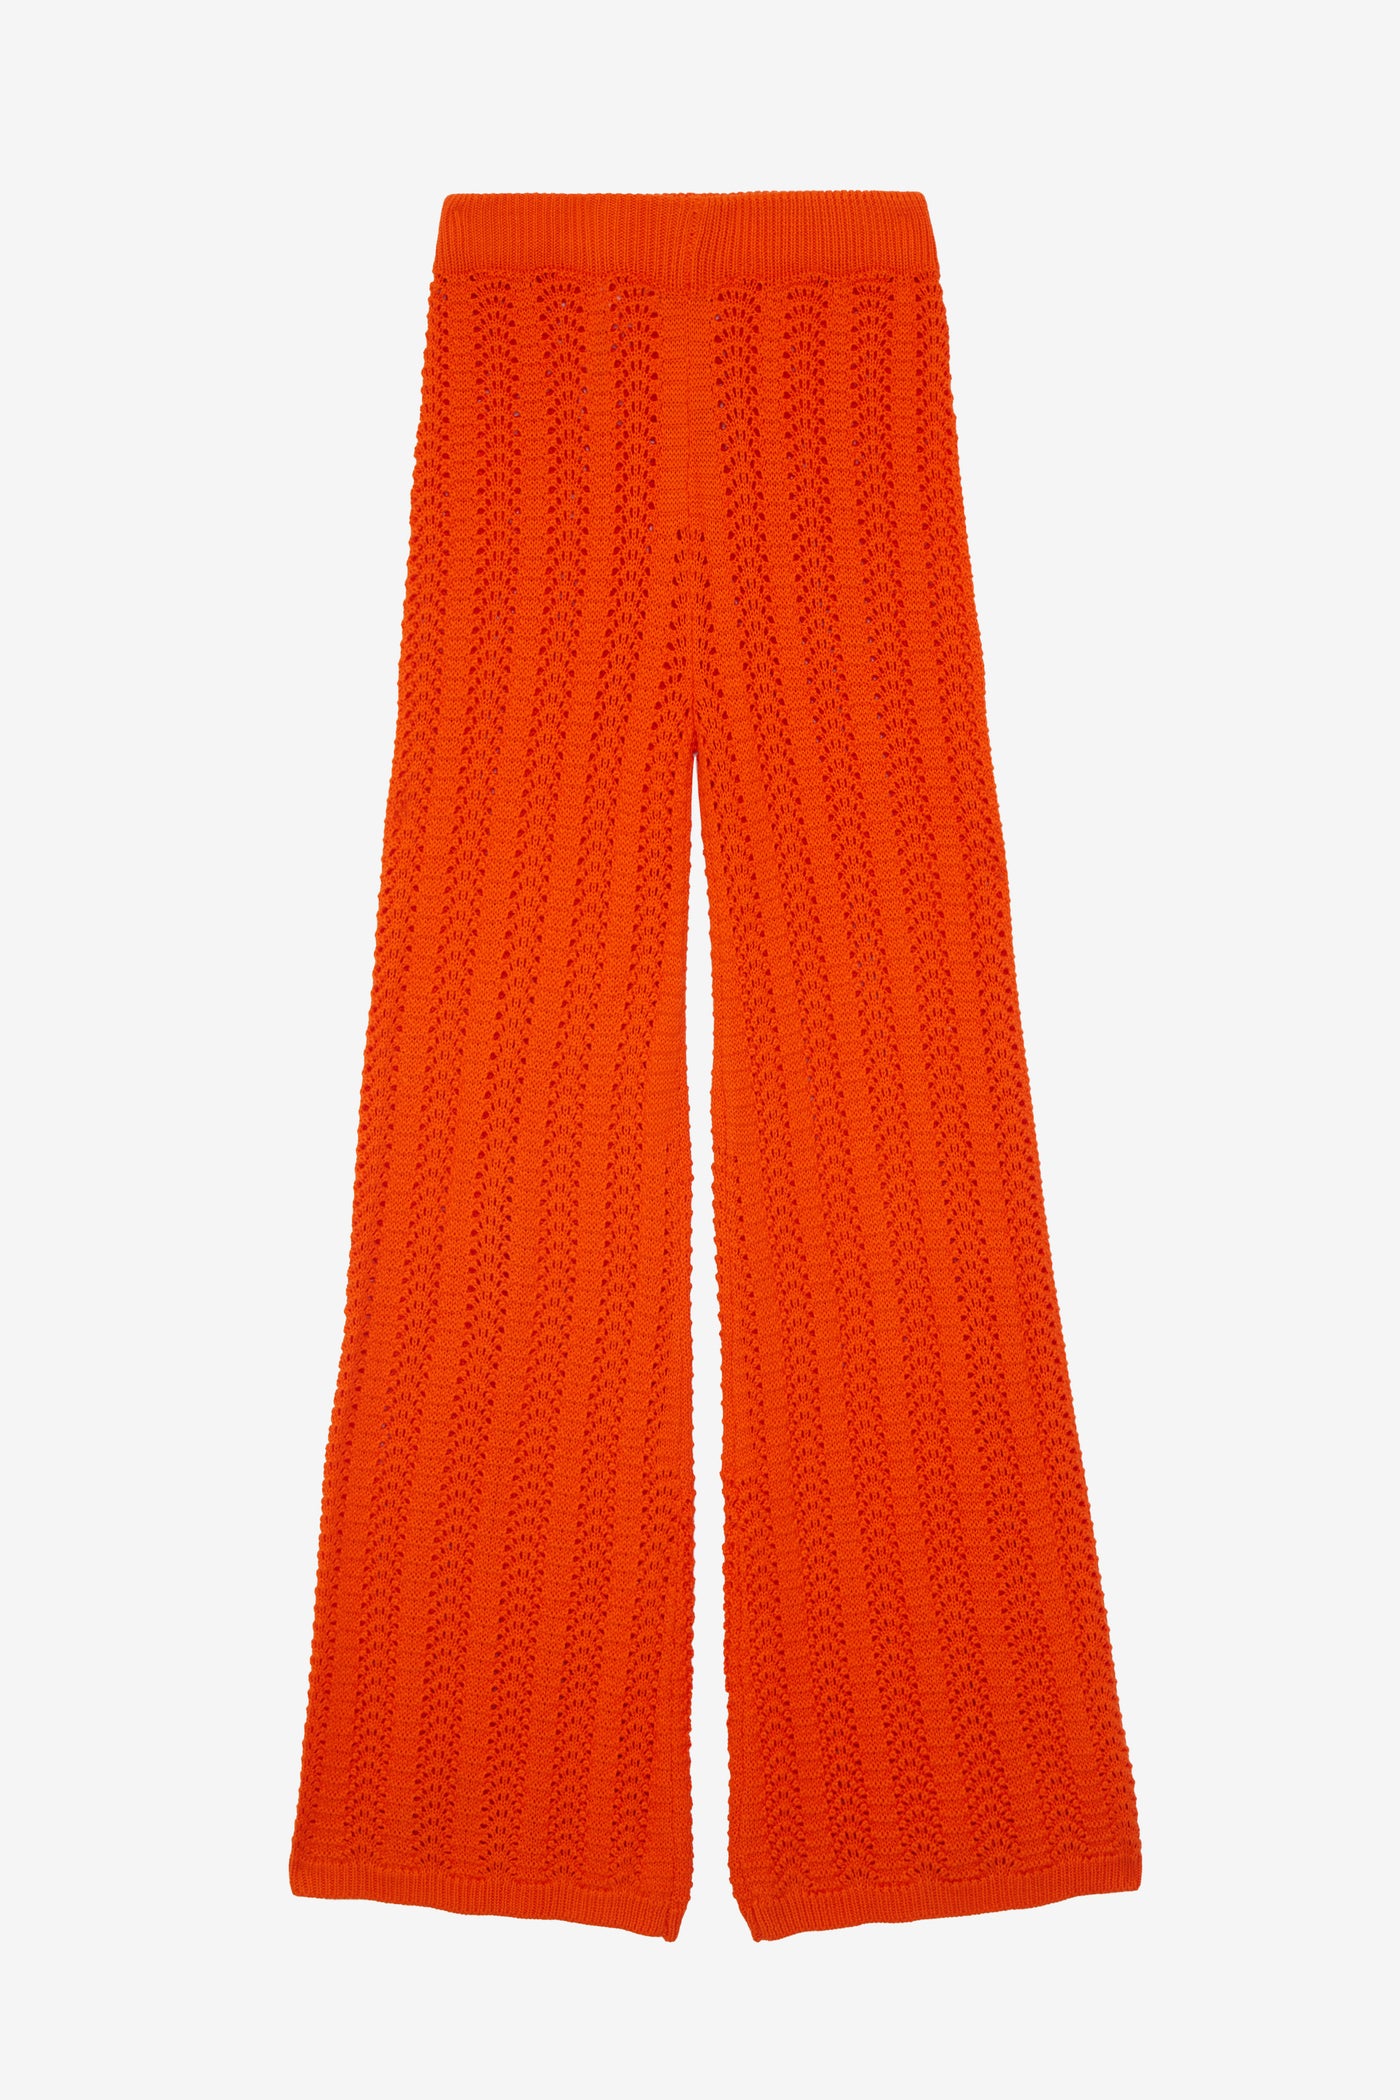 Pantalón Argon naranja